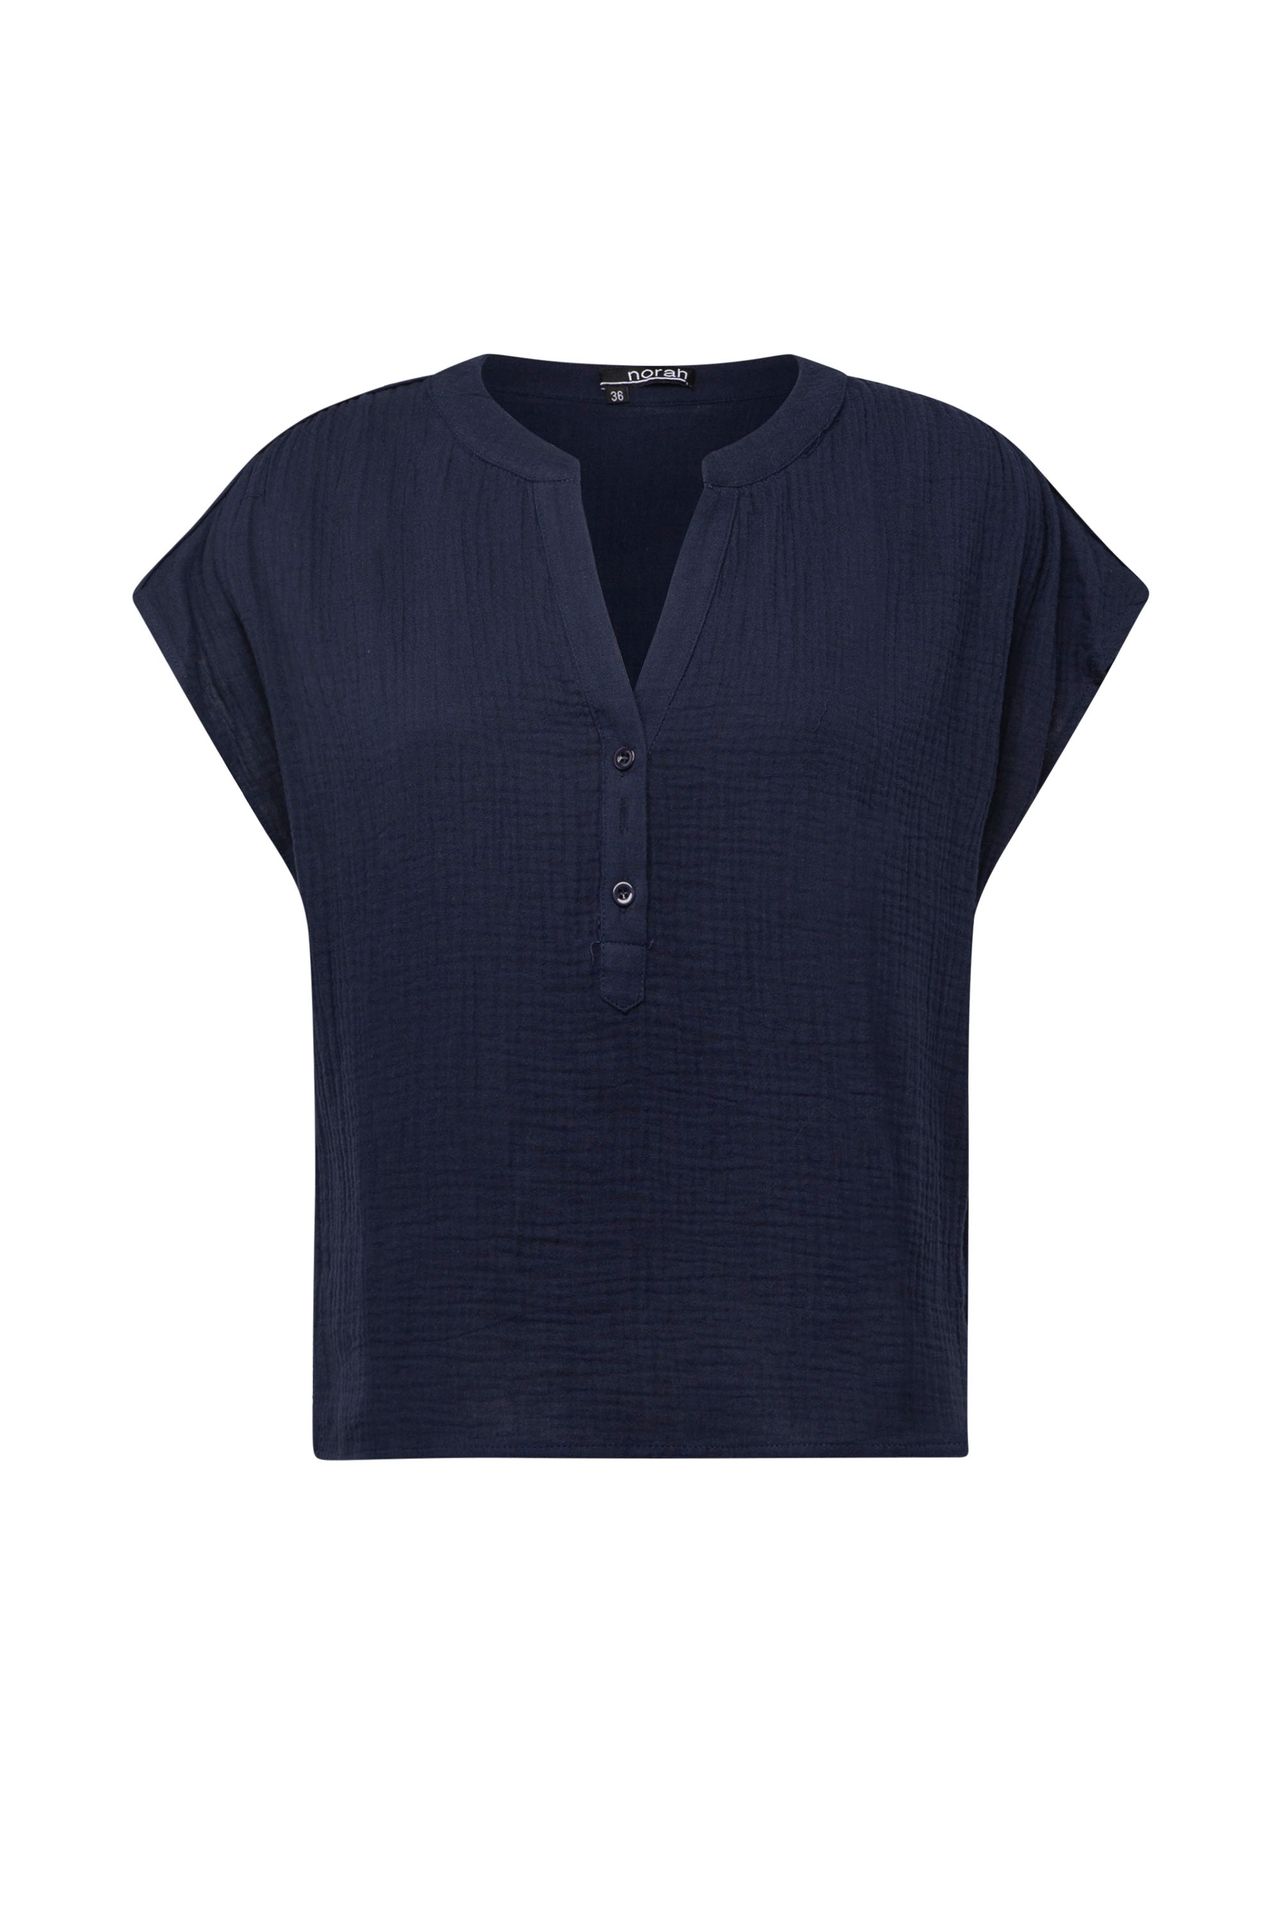 Norah Donkerblauwe blouse dark blue 213690-499